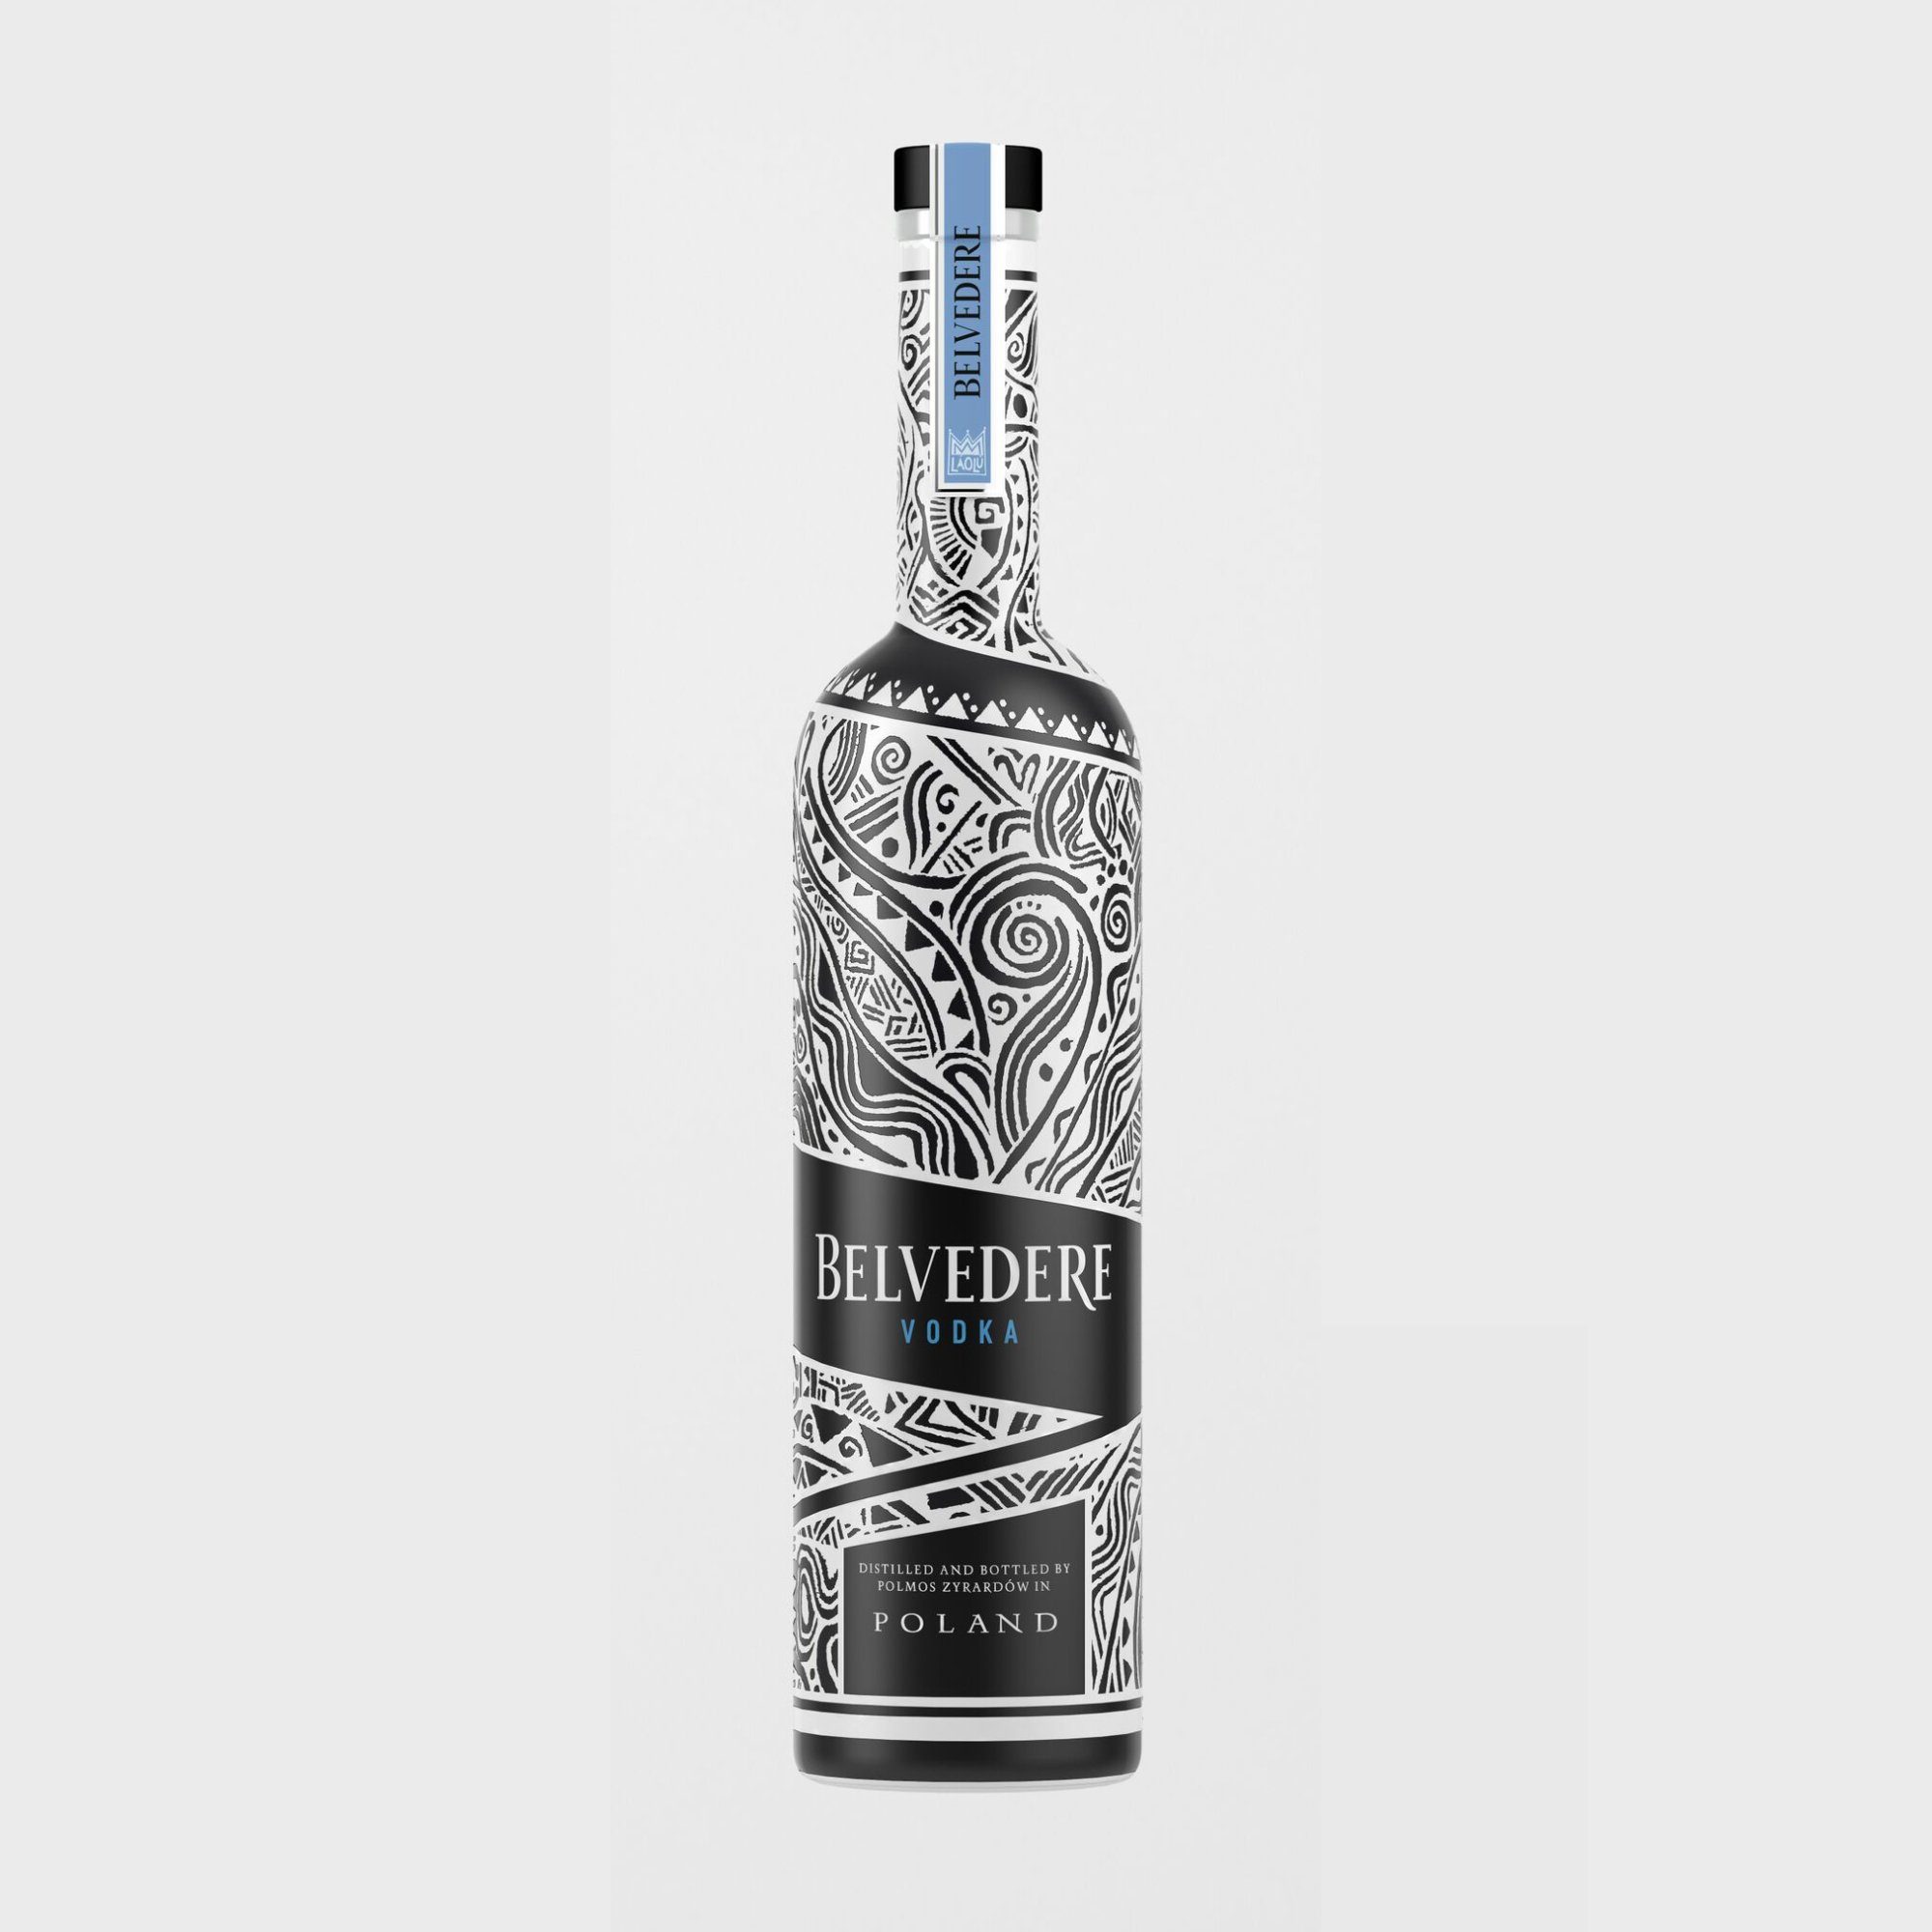 Is Belvedere Vodka Gluten Free